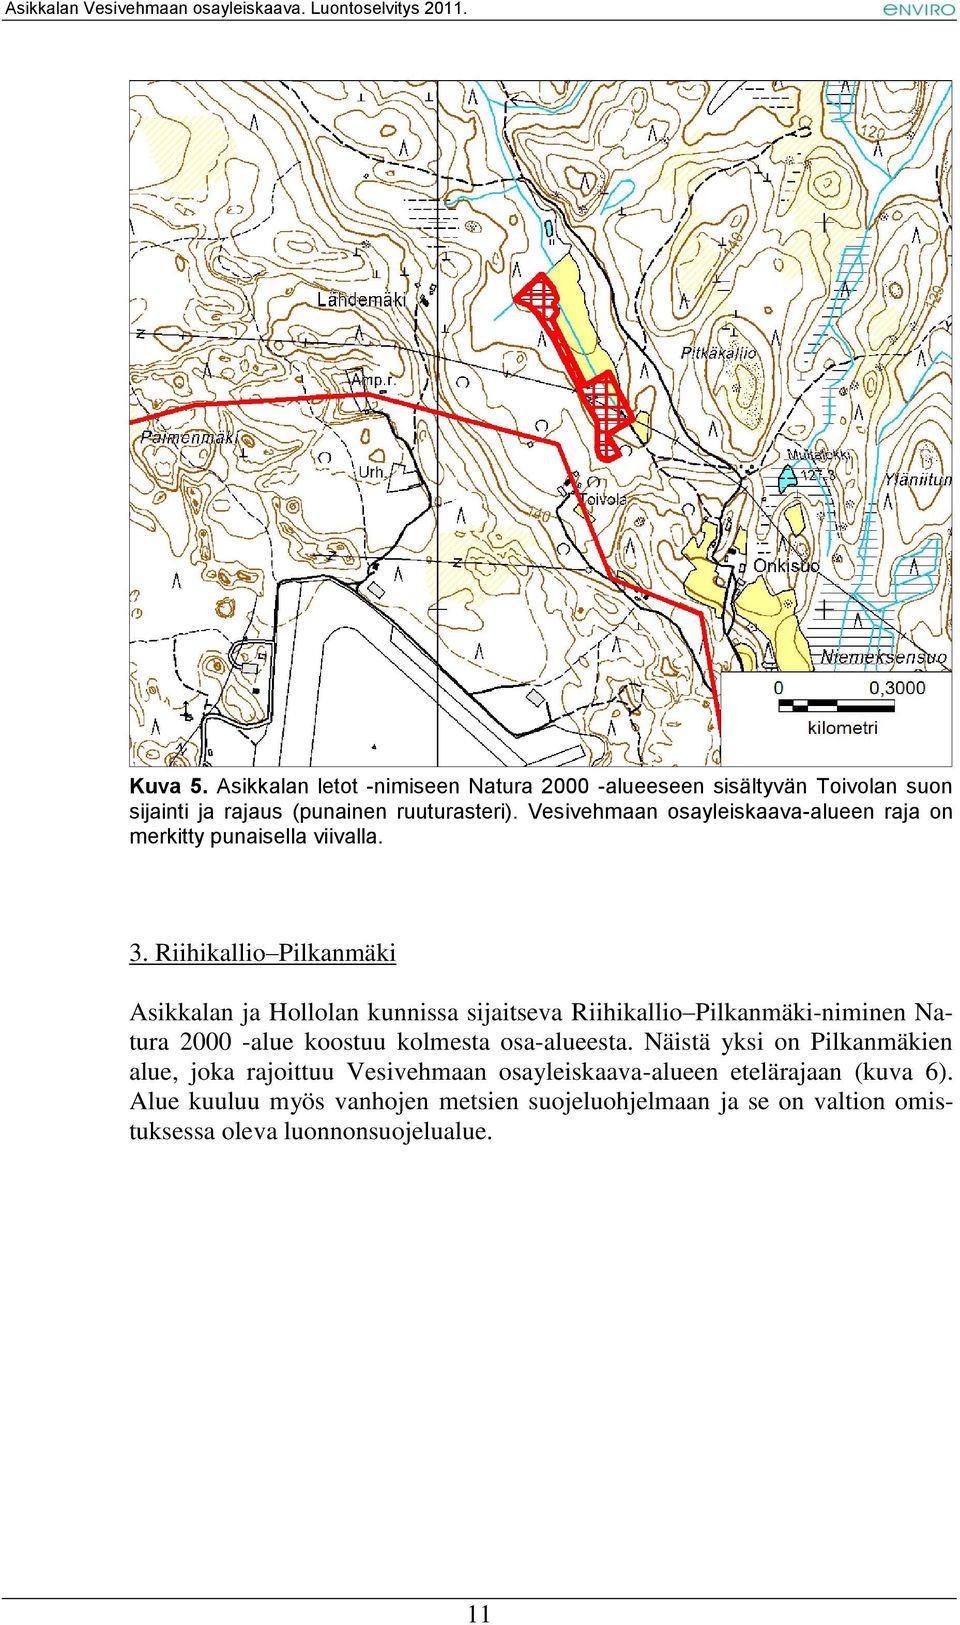 Riihikallio Pilkanmäki Asikkalan ja Hollolan kunnissa sijaitseva Riihikallio Pilkanmäki-niminen Natura 2000 -alue koostuu kolmesta